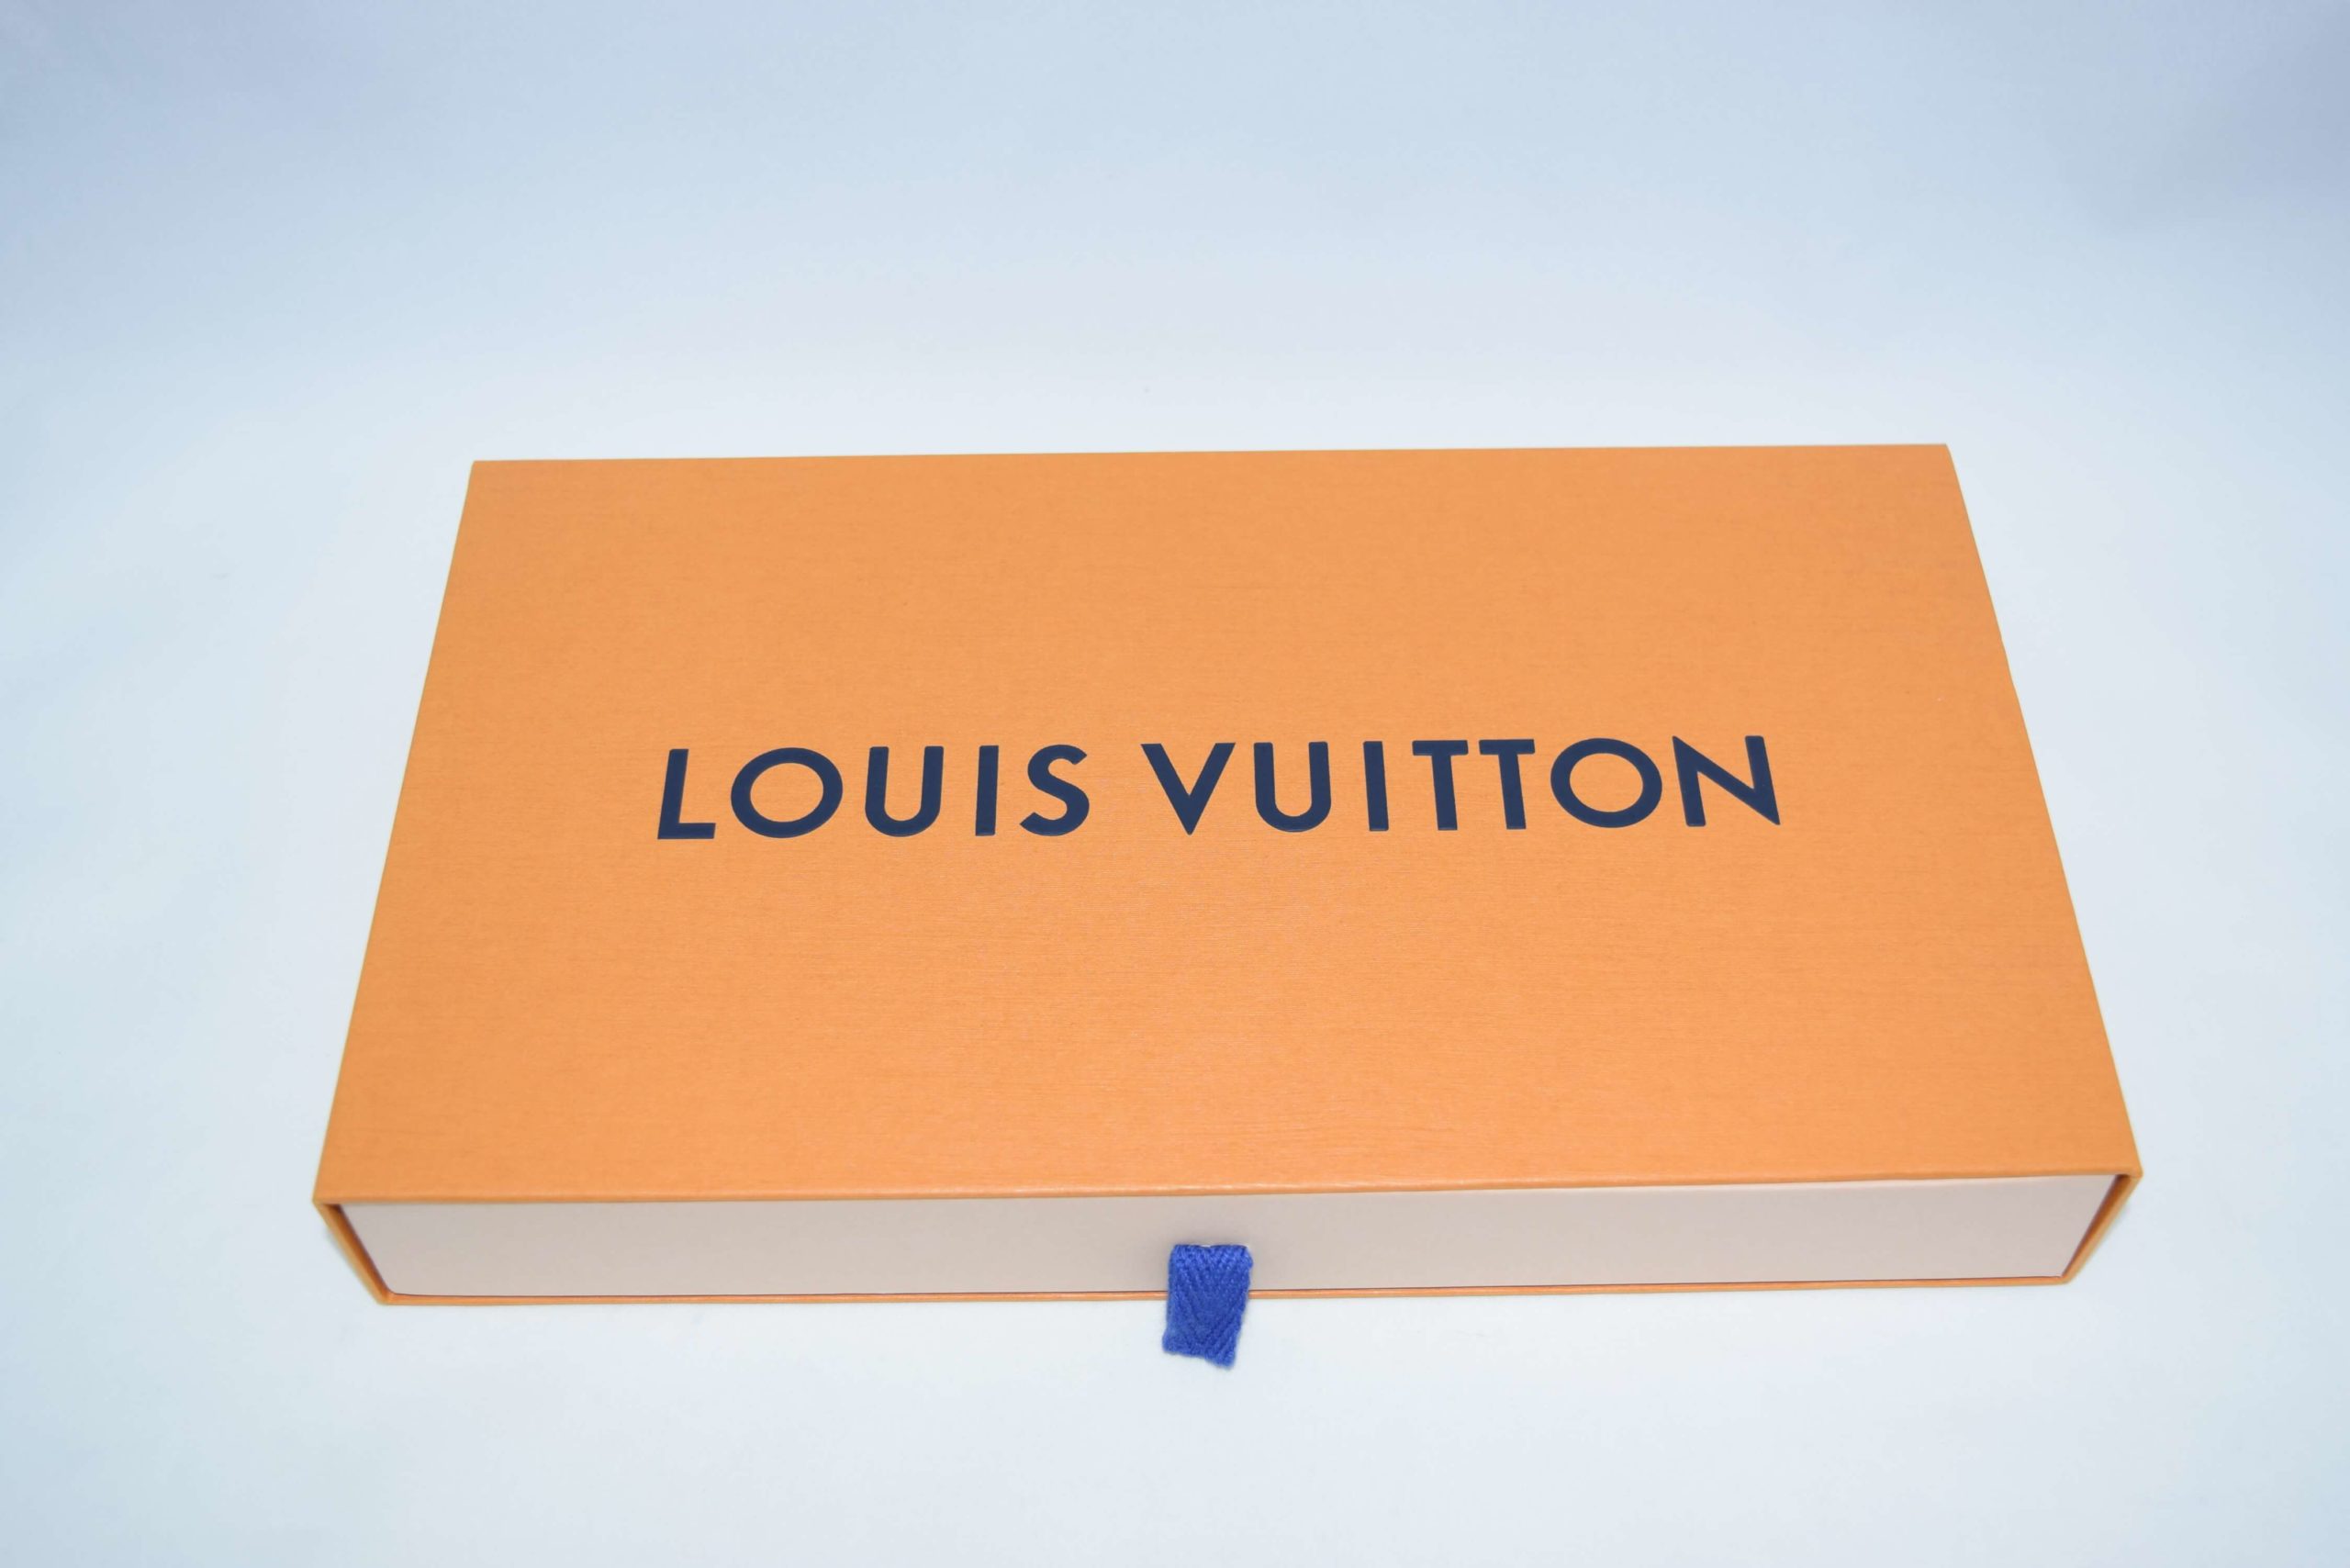 Louis Vuitton 3D Bandana By Virgil Abloh